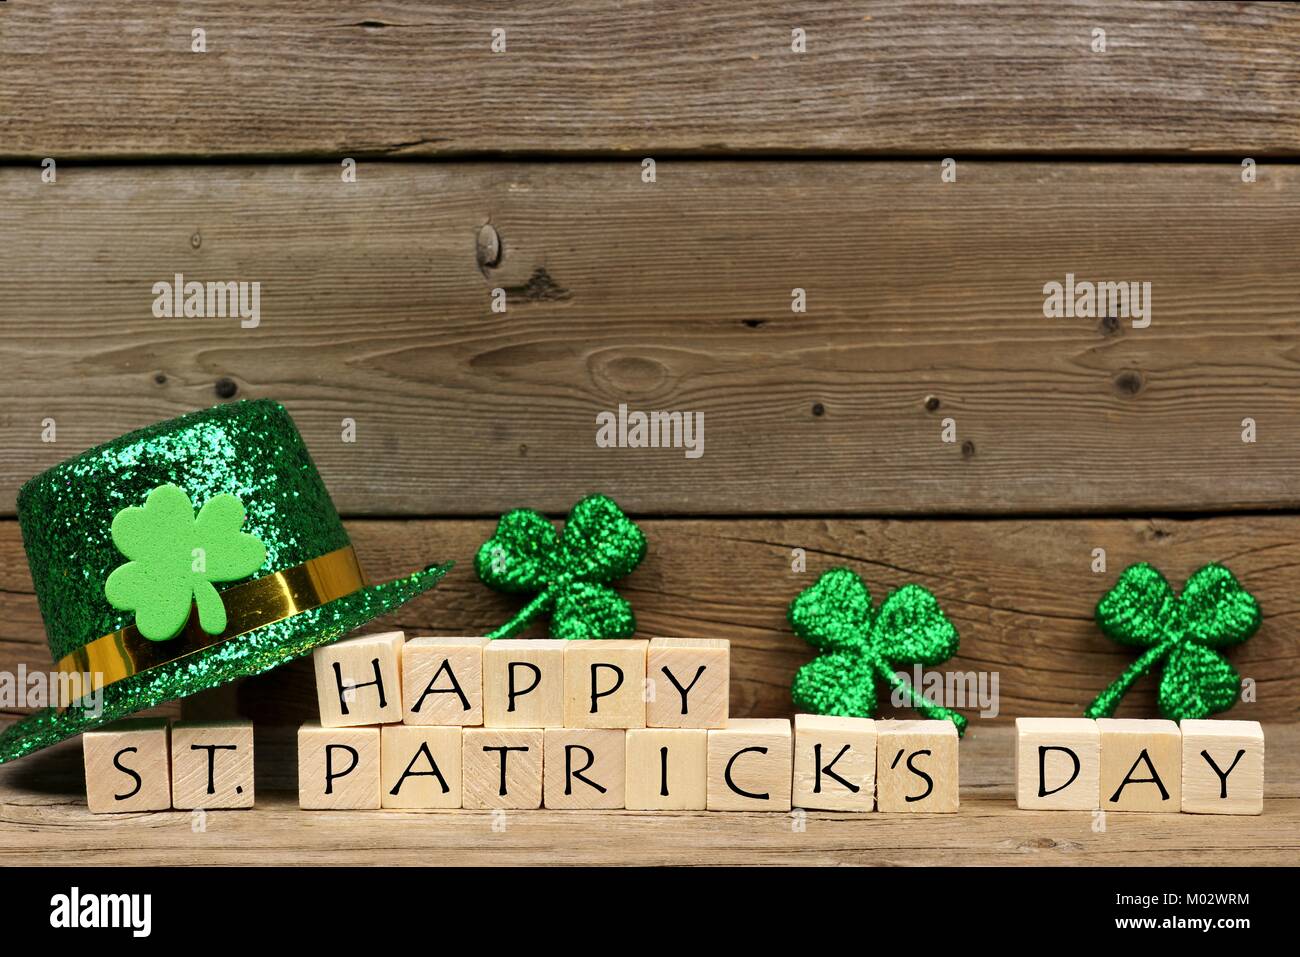 Happy St Patricks Day Holzblöcke mit glänzenden Shamrocks und Leprechaun hat auf einer hölzernen Hintergrund Stockfoto